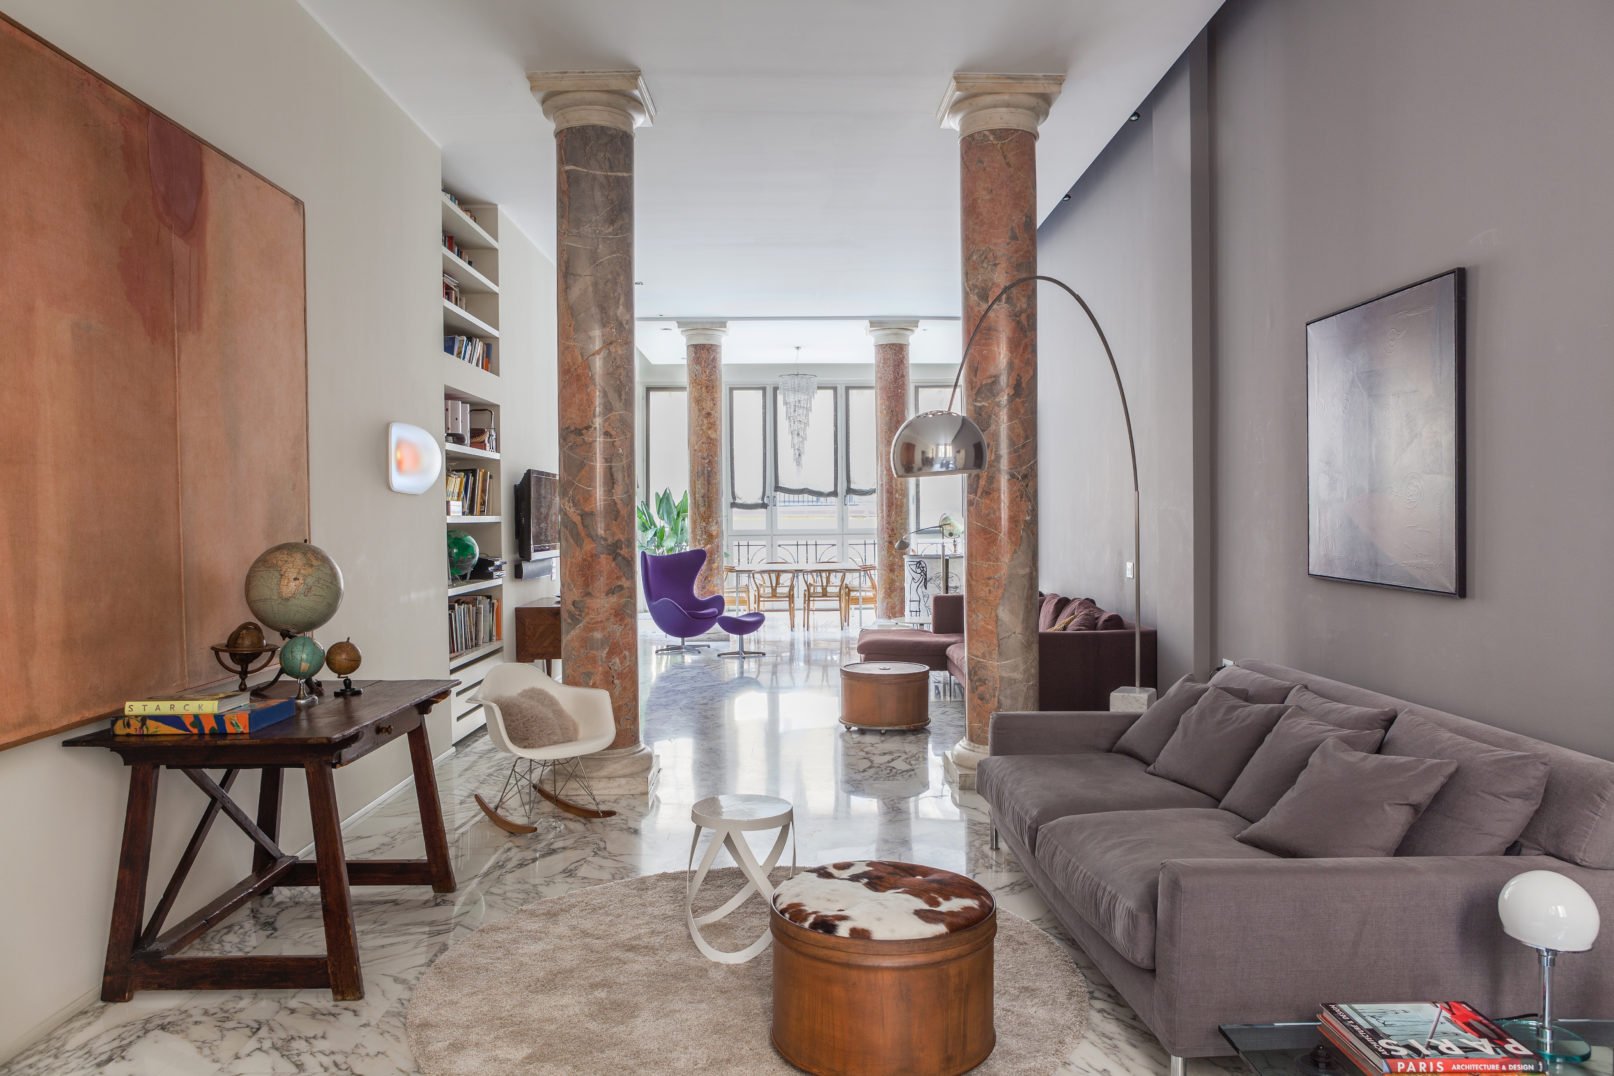 Open House Milano 2018 – Casa Barrel12